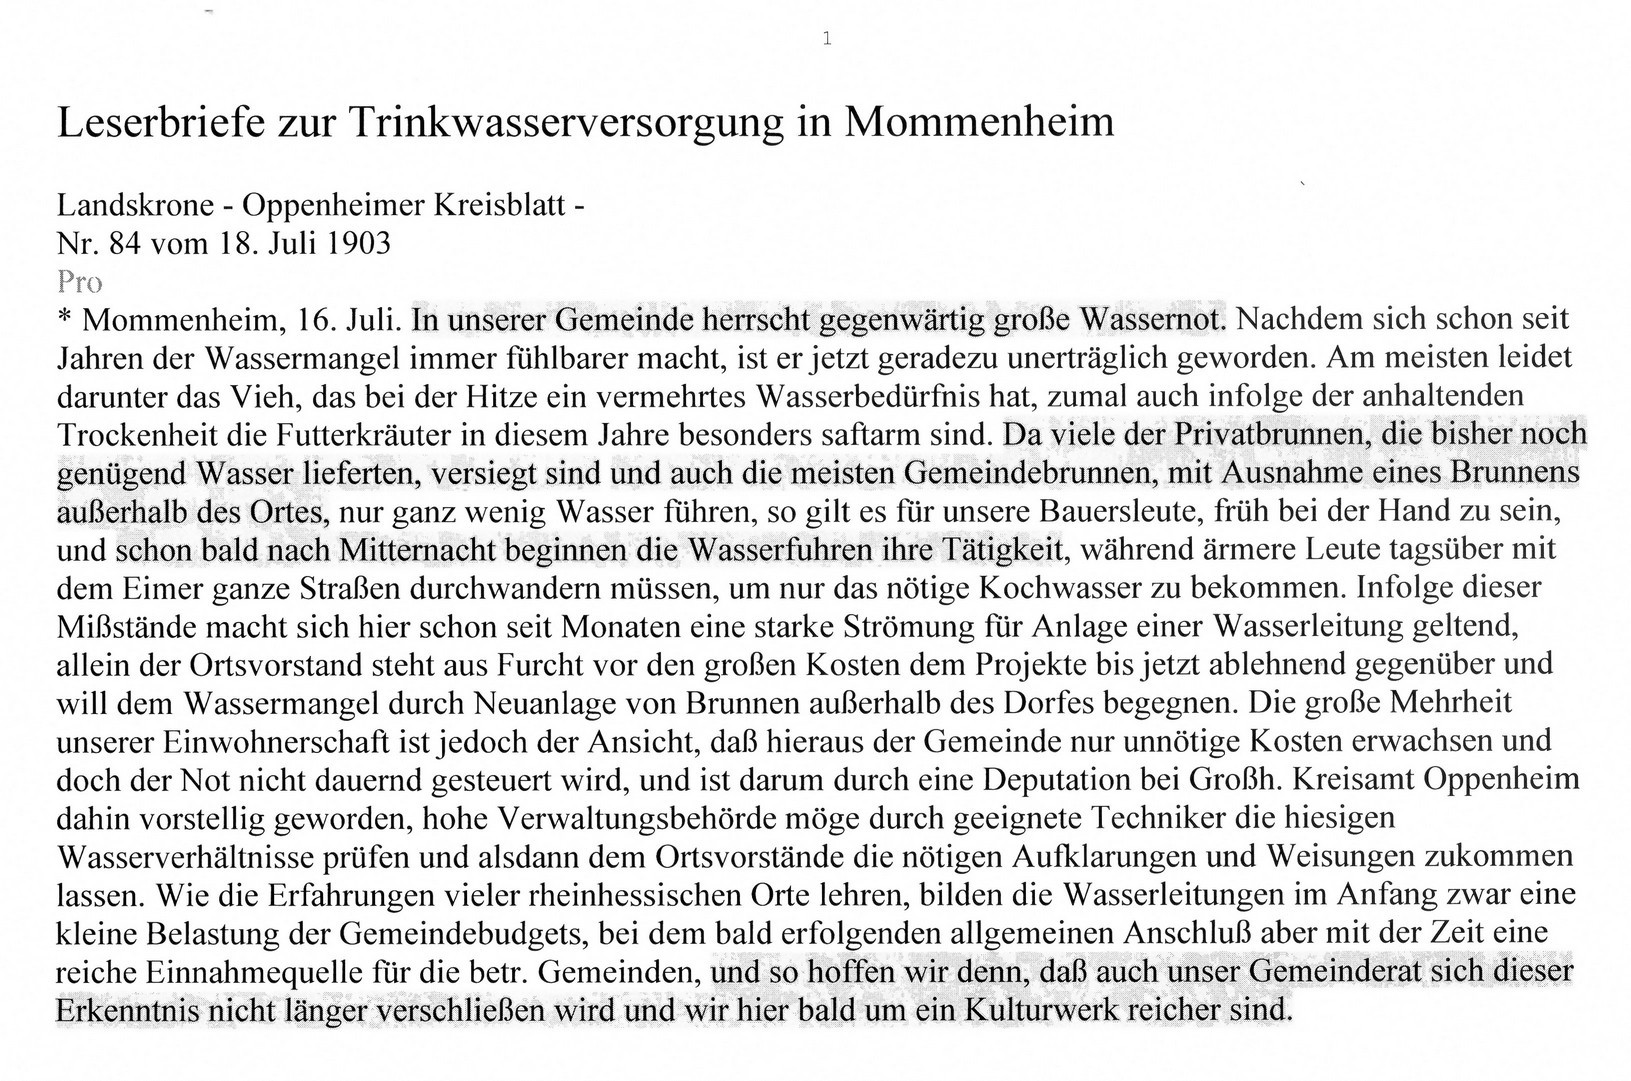 Pro und Contra zur Wasserversorgung aus Mommenheim (Kulturverein Guntersblum CC BY-NC-SA)